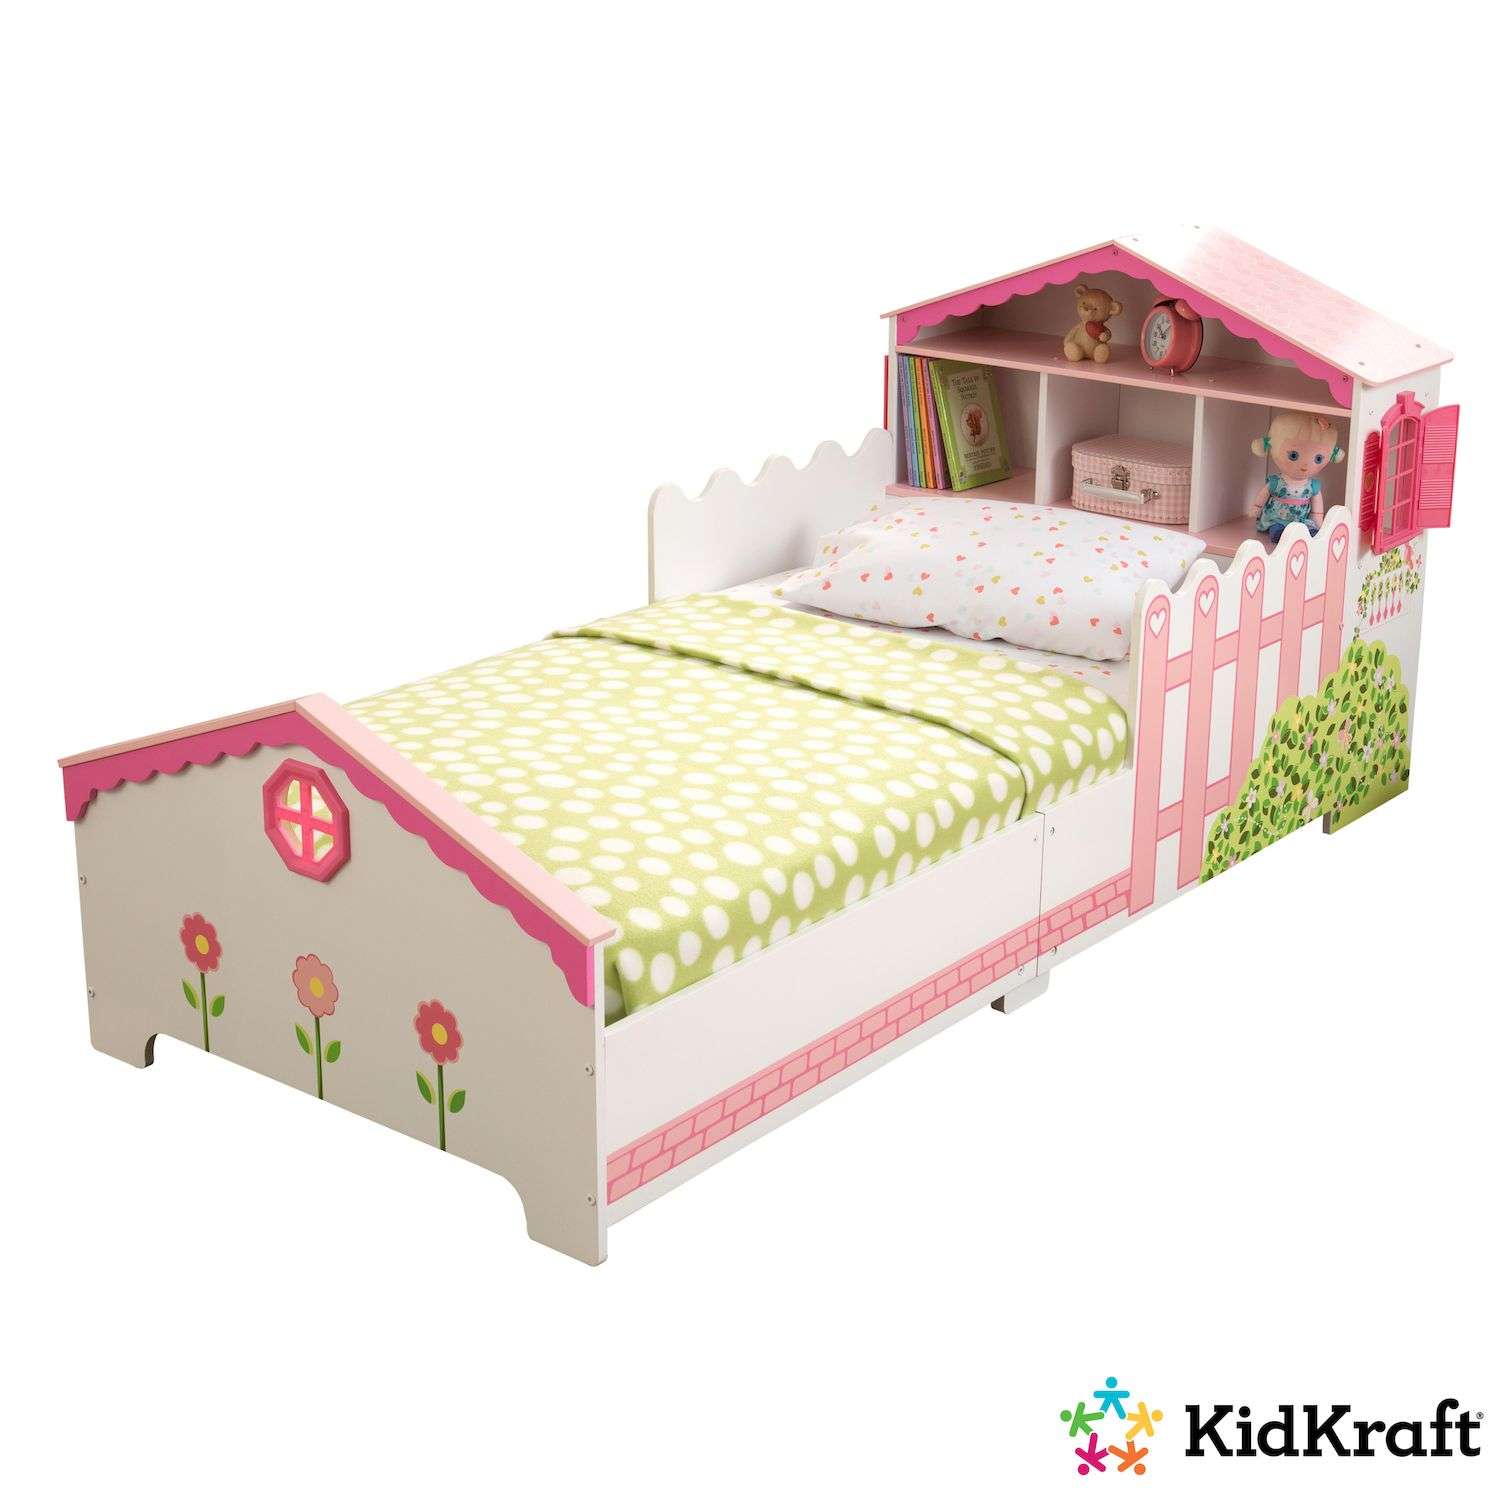 Кровать KidKraft Кукольный домик 76255_KE - фото 2